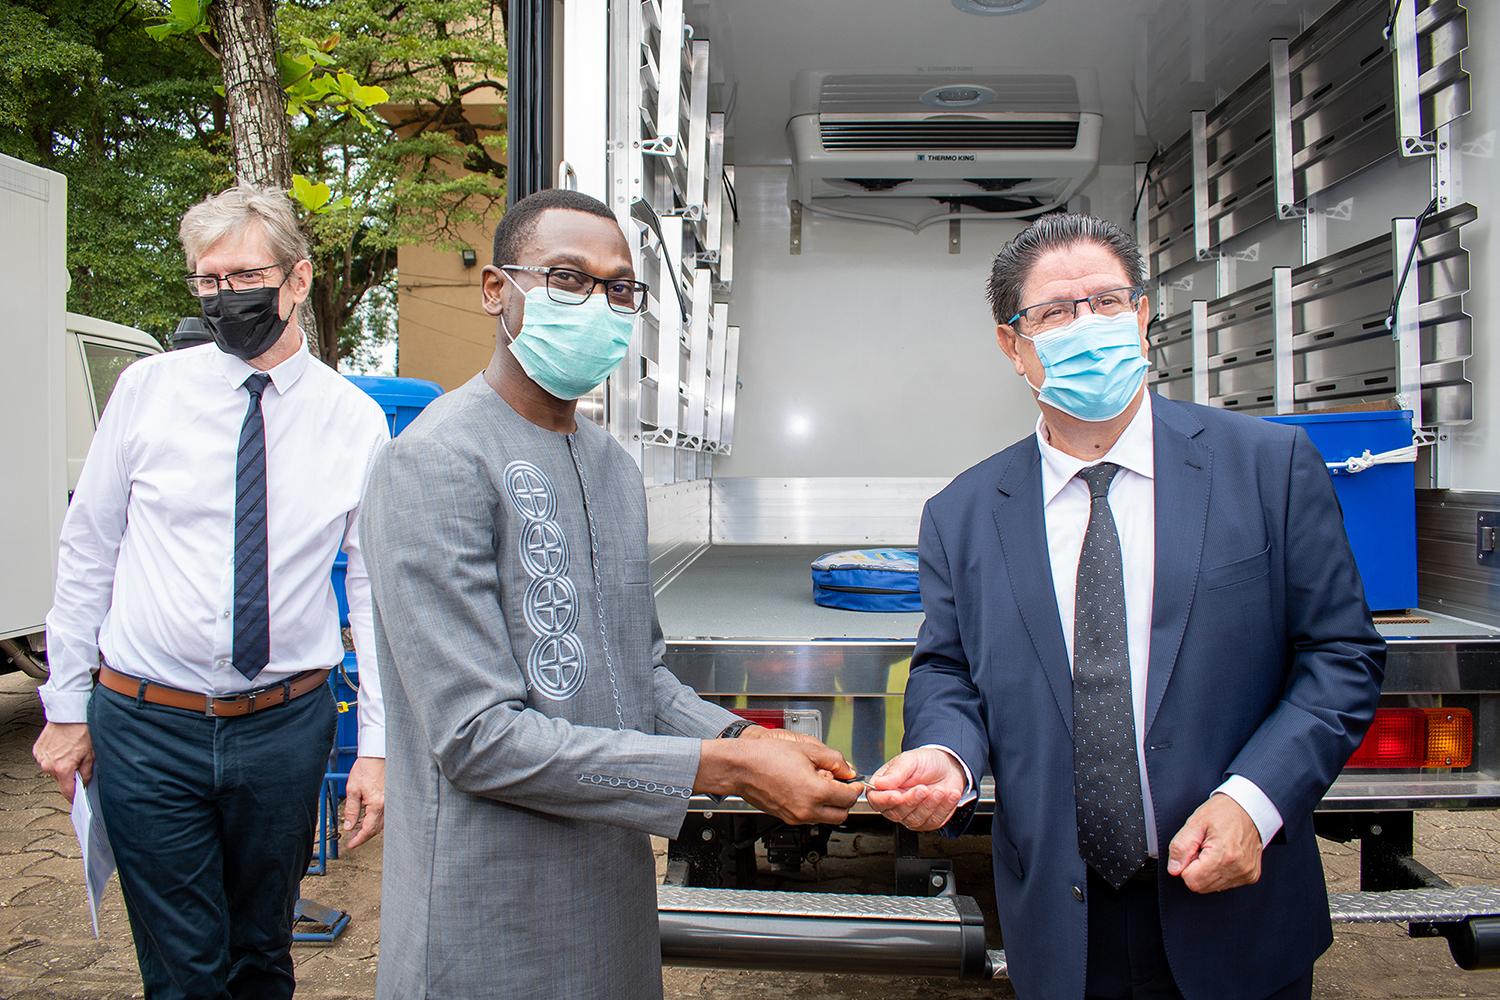 Soutien au plan de riposte à la COVID-19 au Bénin : la France remet 4 véhicules utilitaires réfrigérés au Ministère de la Sante